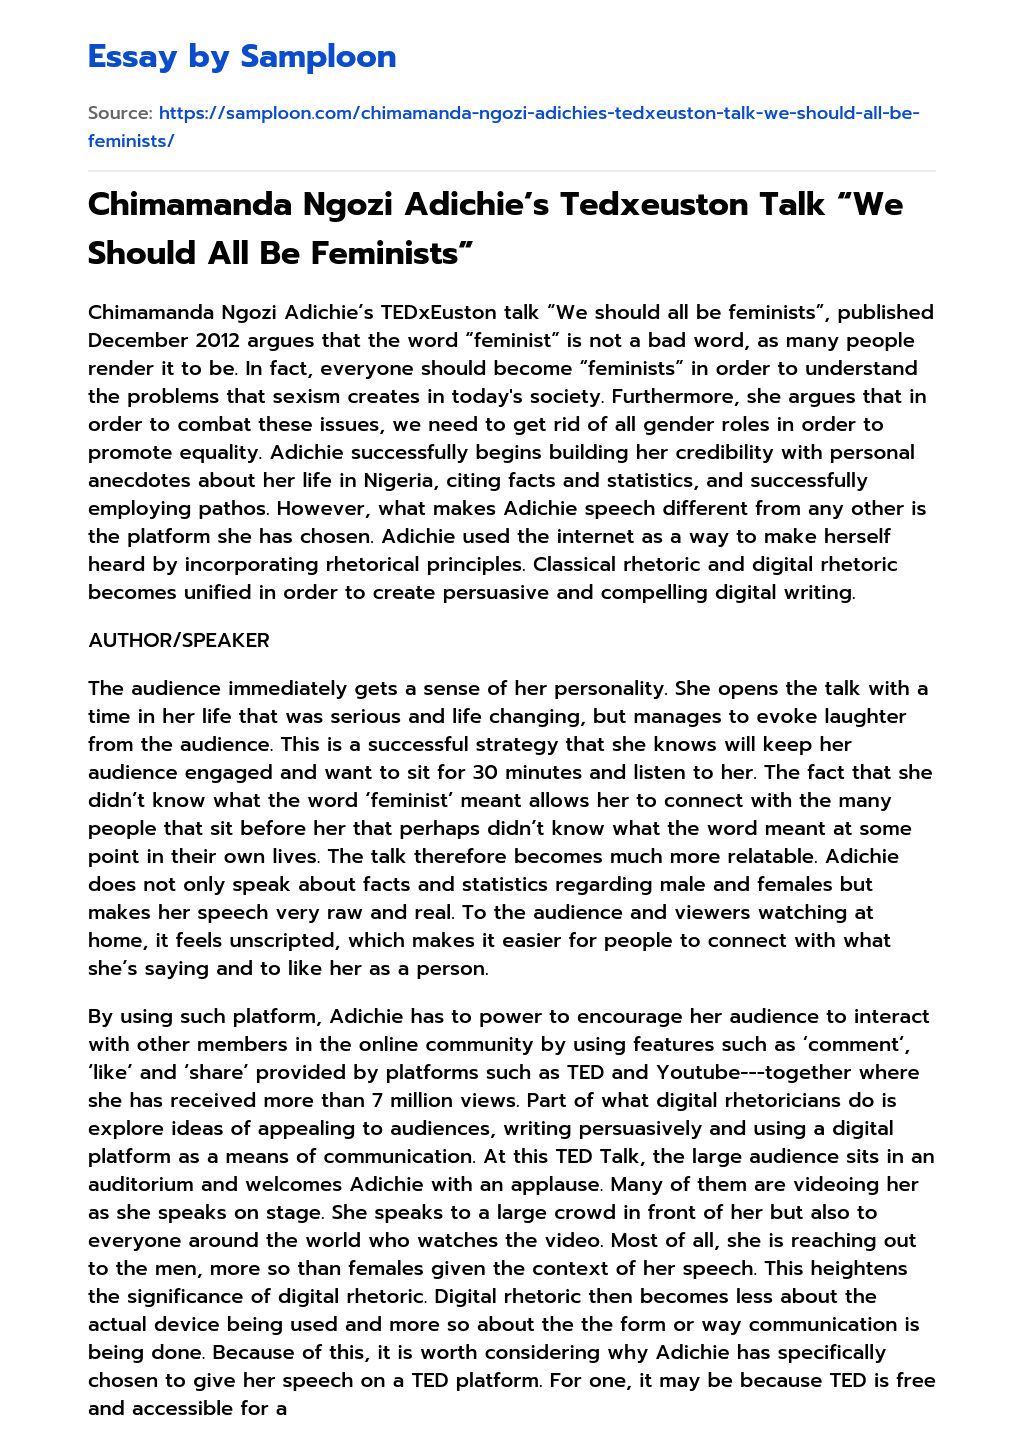 Chimamanda Ngozi Adichie’s Tedxeuston Talk “We Should All Be Feminists” essay